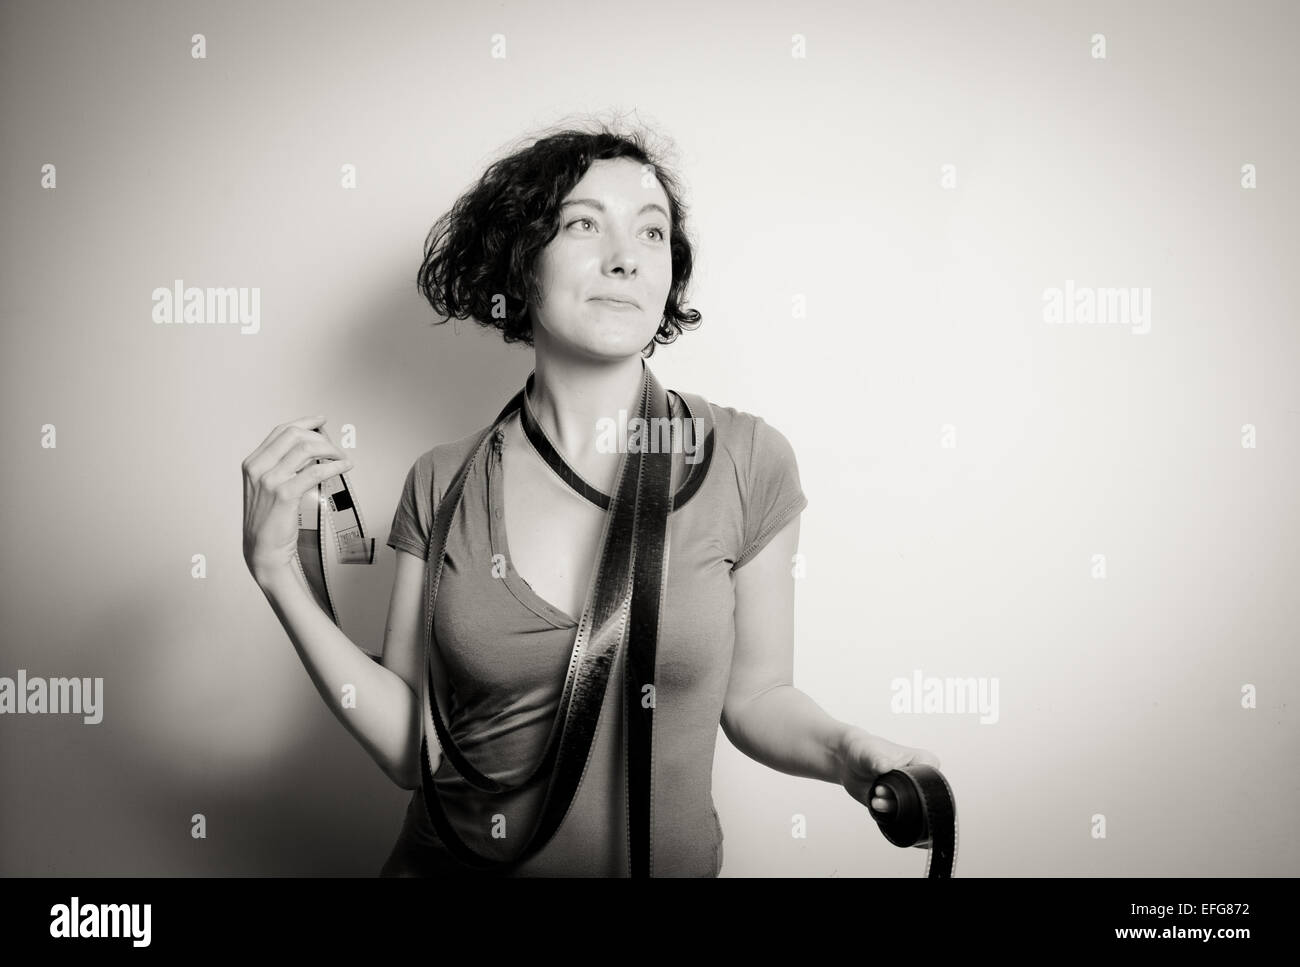 Jolie jeune femme avec collier et rêvant de film comme expression en noir et blanc vintage Banque D'Images